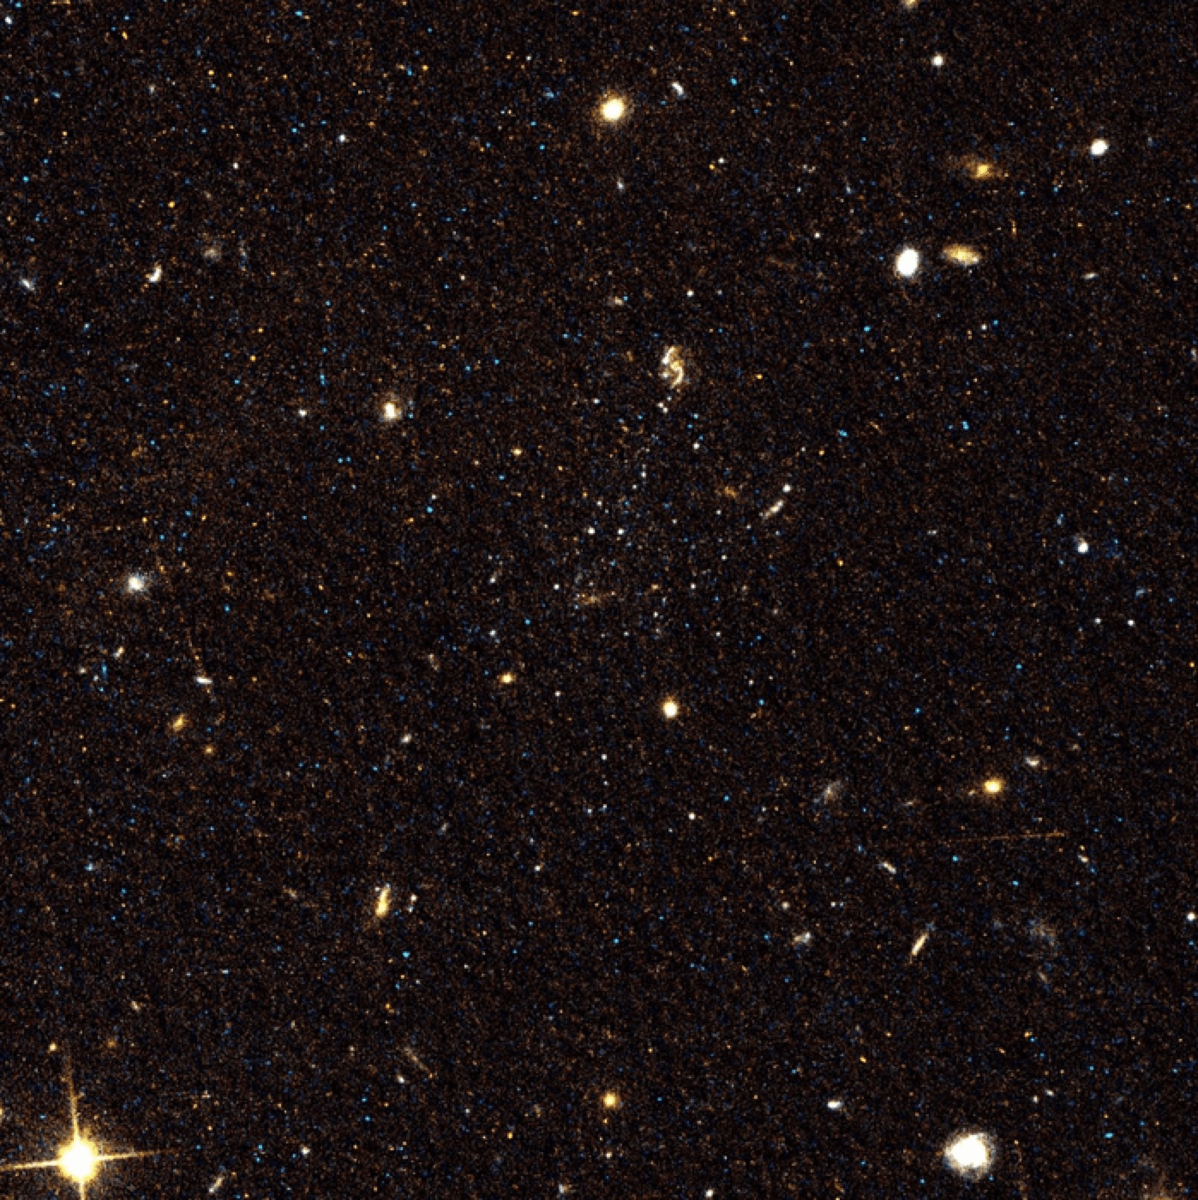 Image of space where three faint dwarf galaxies sit near a spiral galaxy.